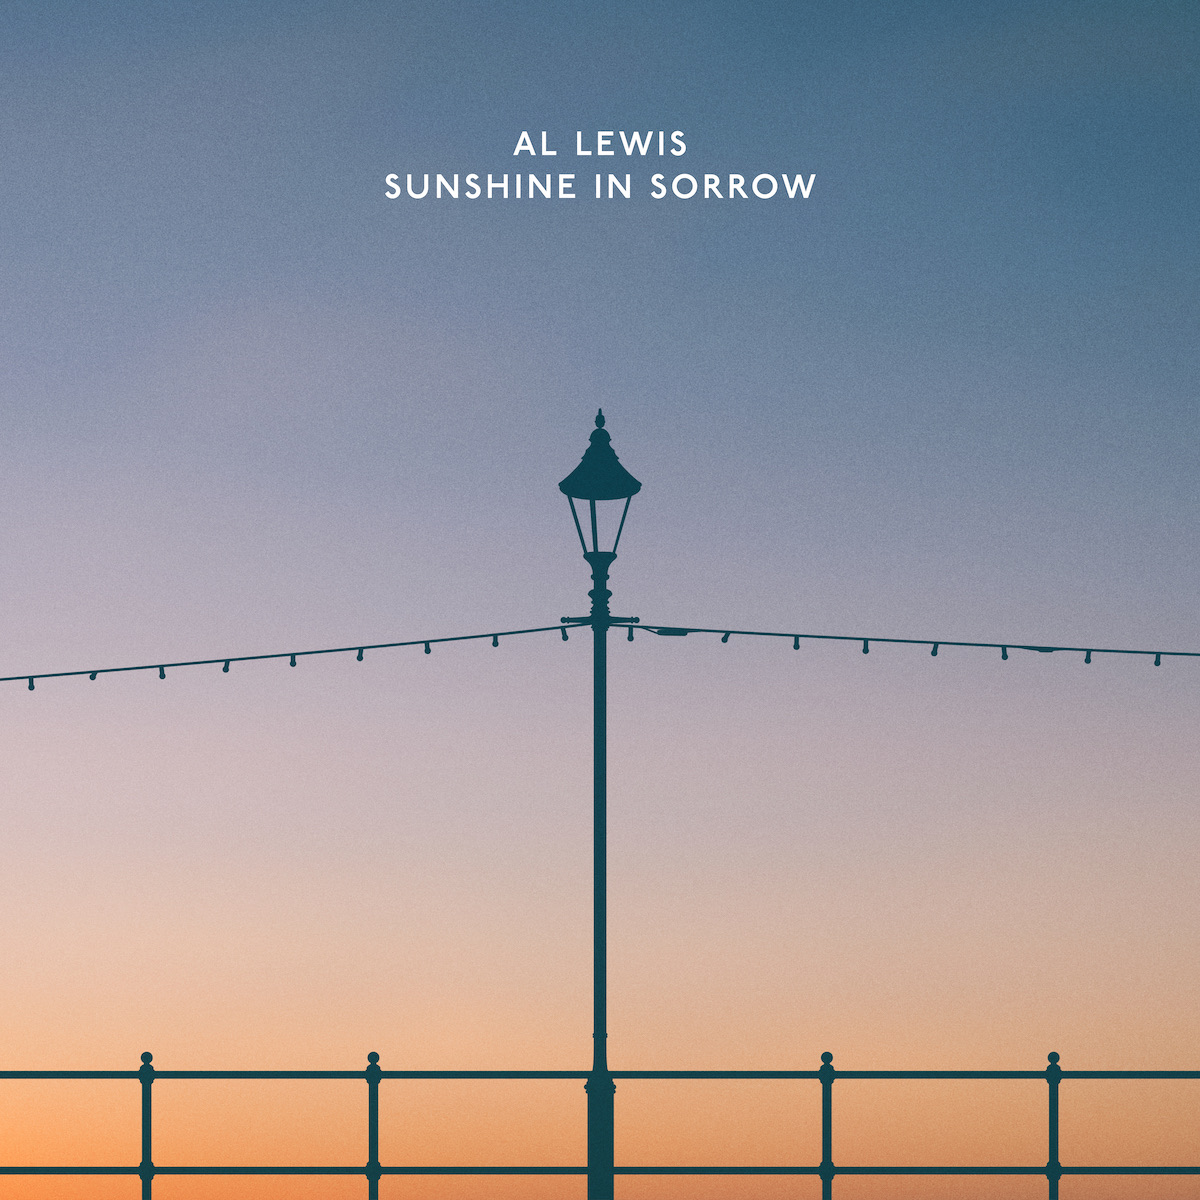 LISTEN: “Sunshine in Sorrow” by Al Lewis